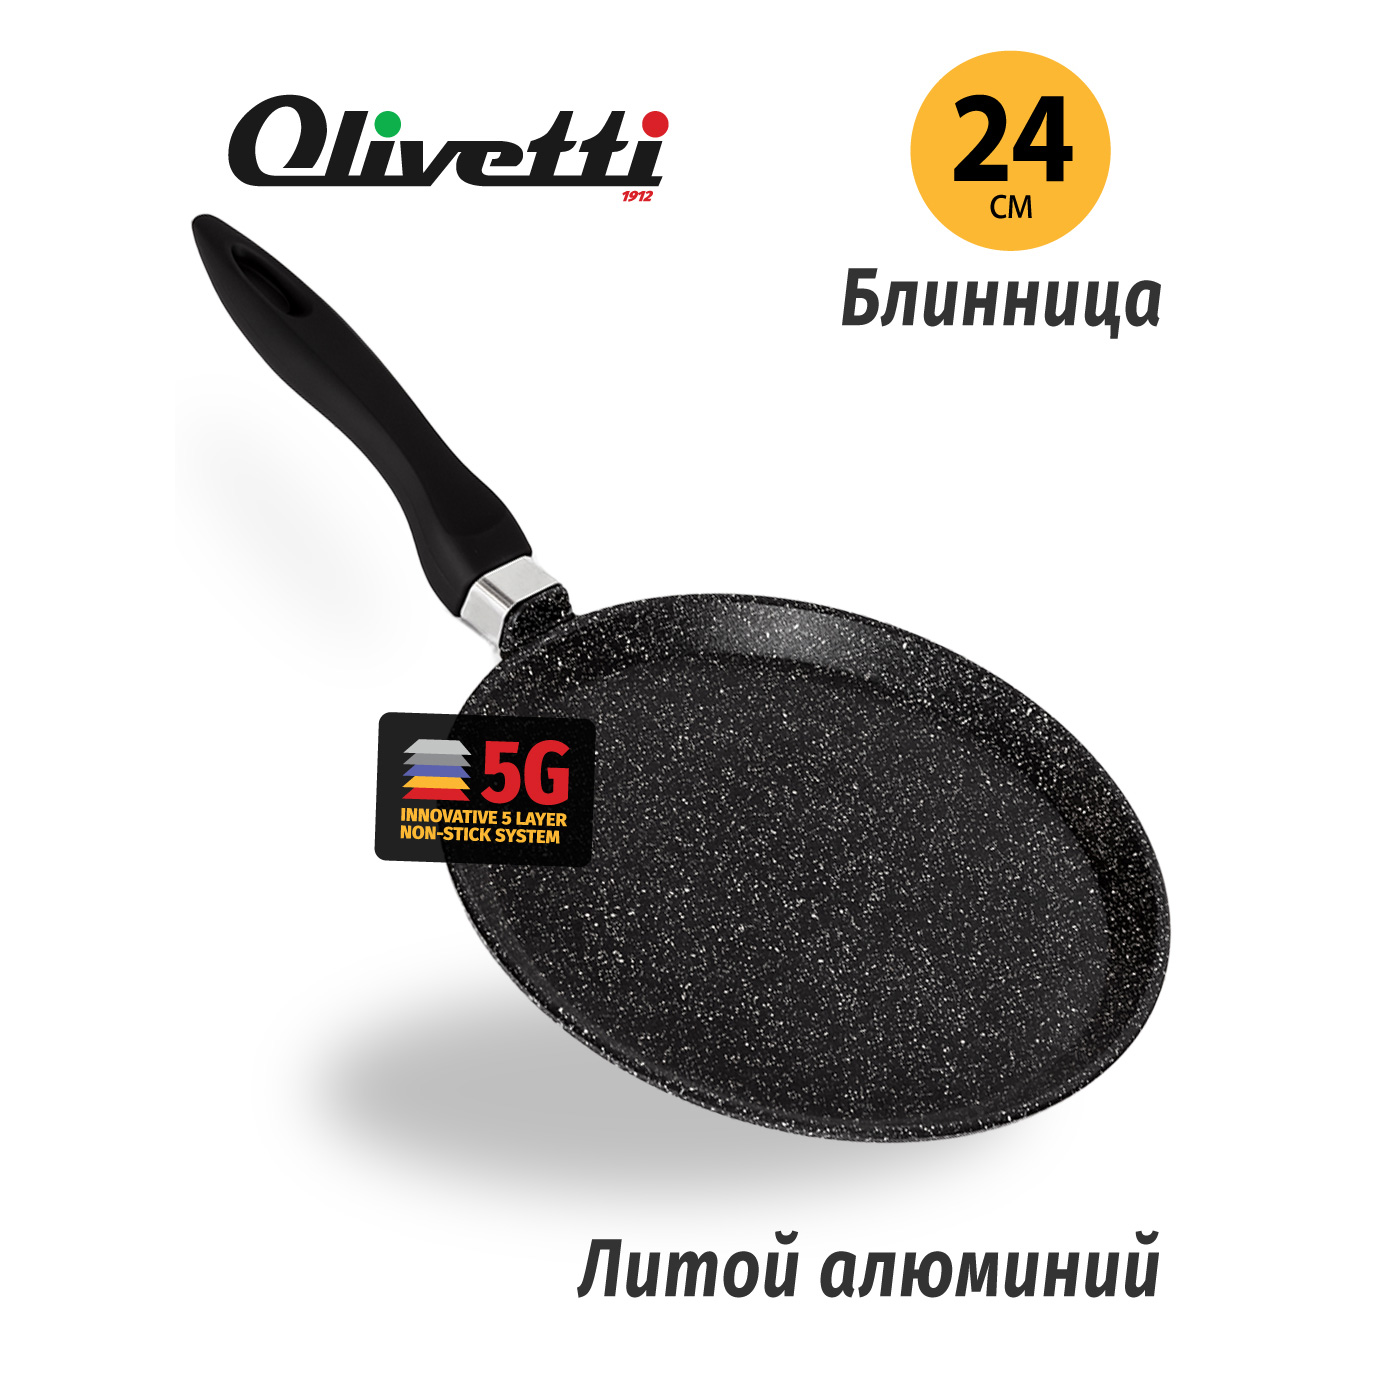 Картинка Блинница Olivetti PP724 (28 см) по разумной цене купить в интернет магазине mall.su